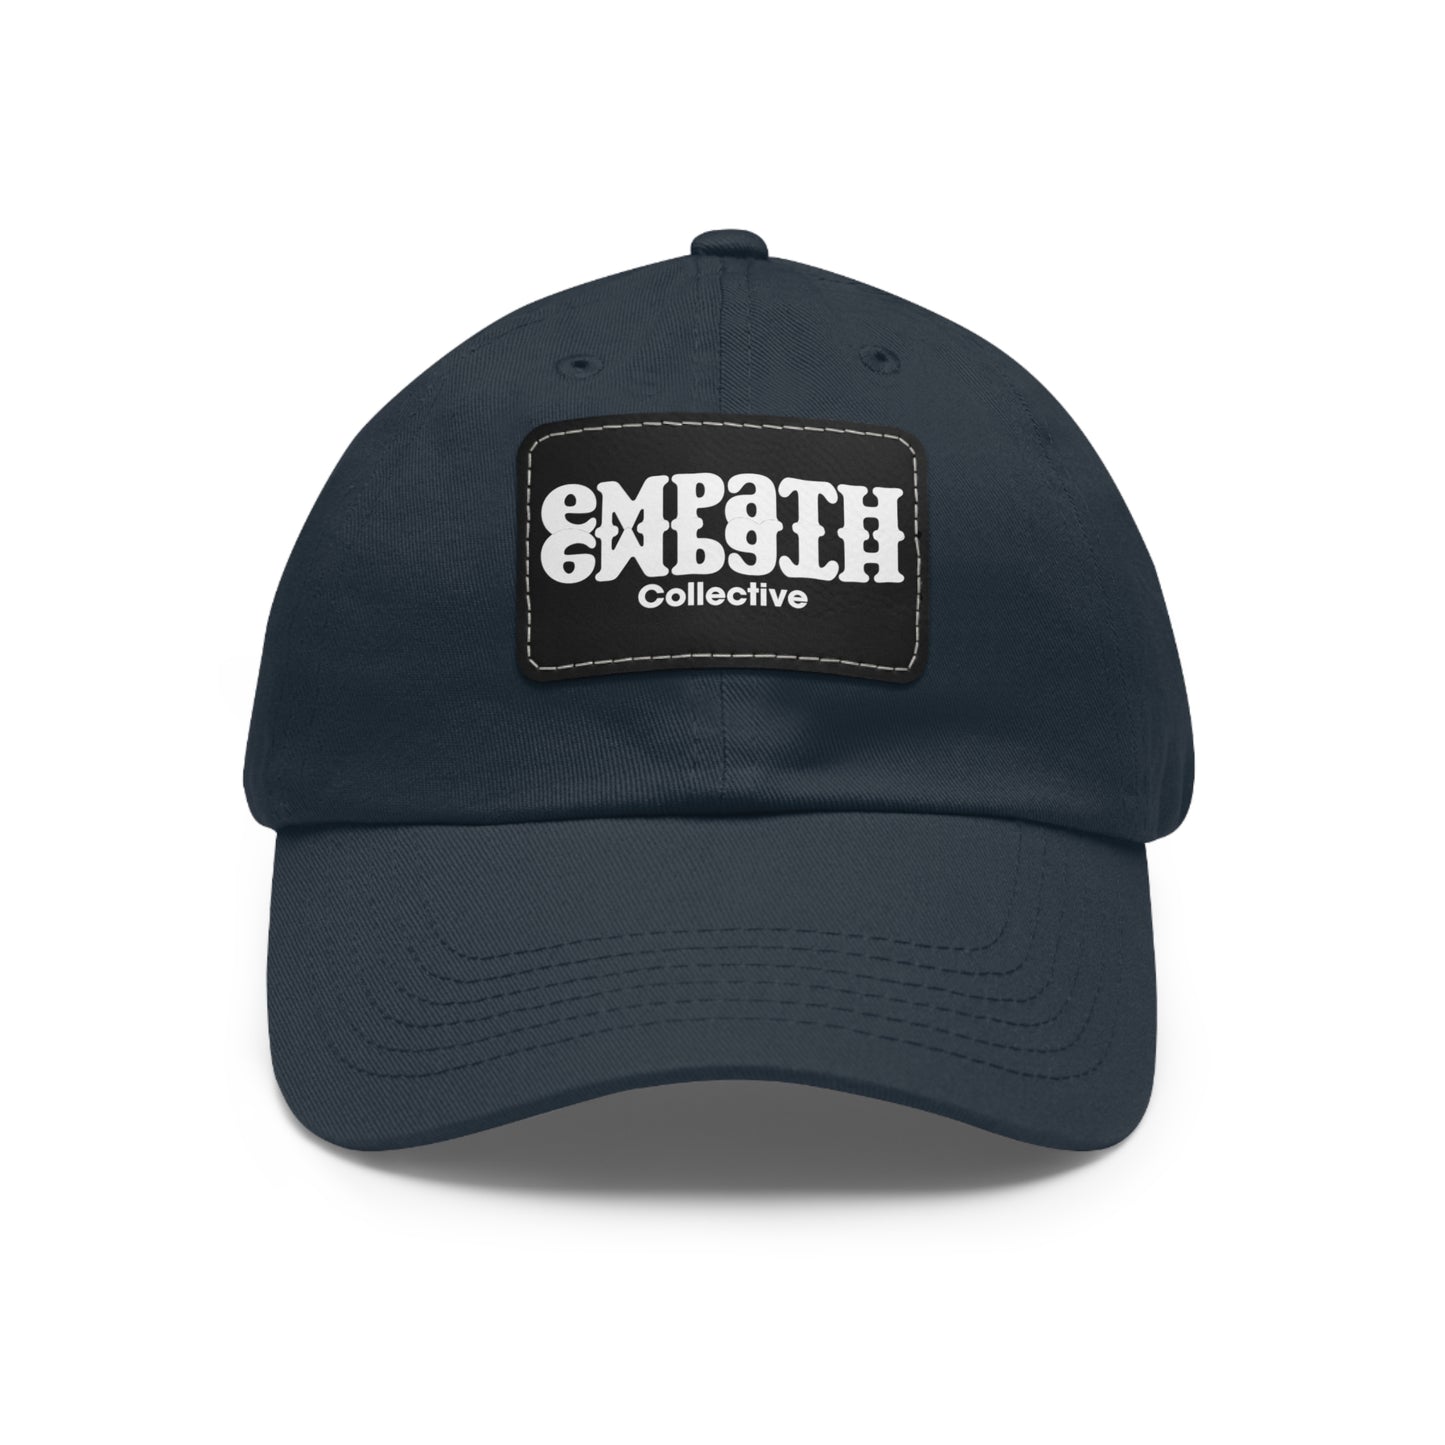 I am Empath | Hat